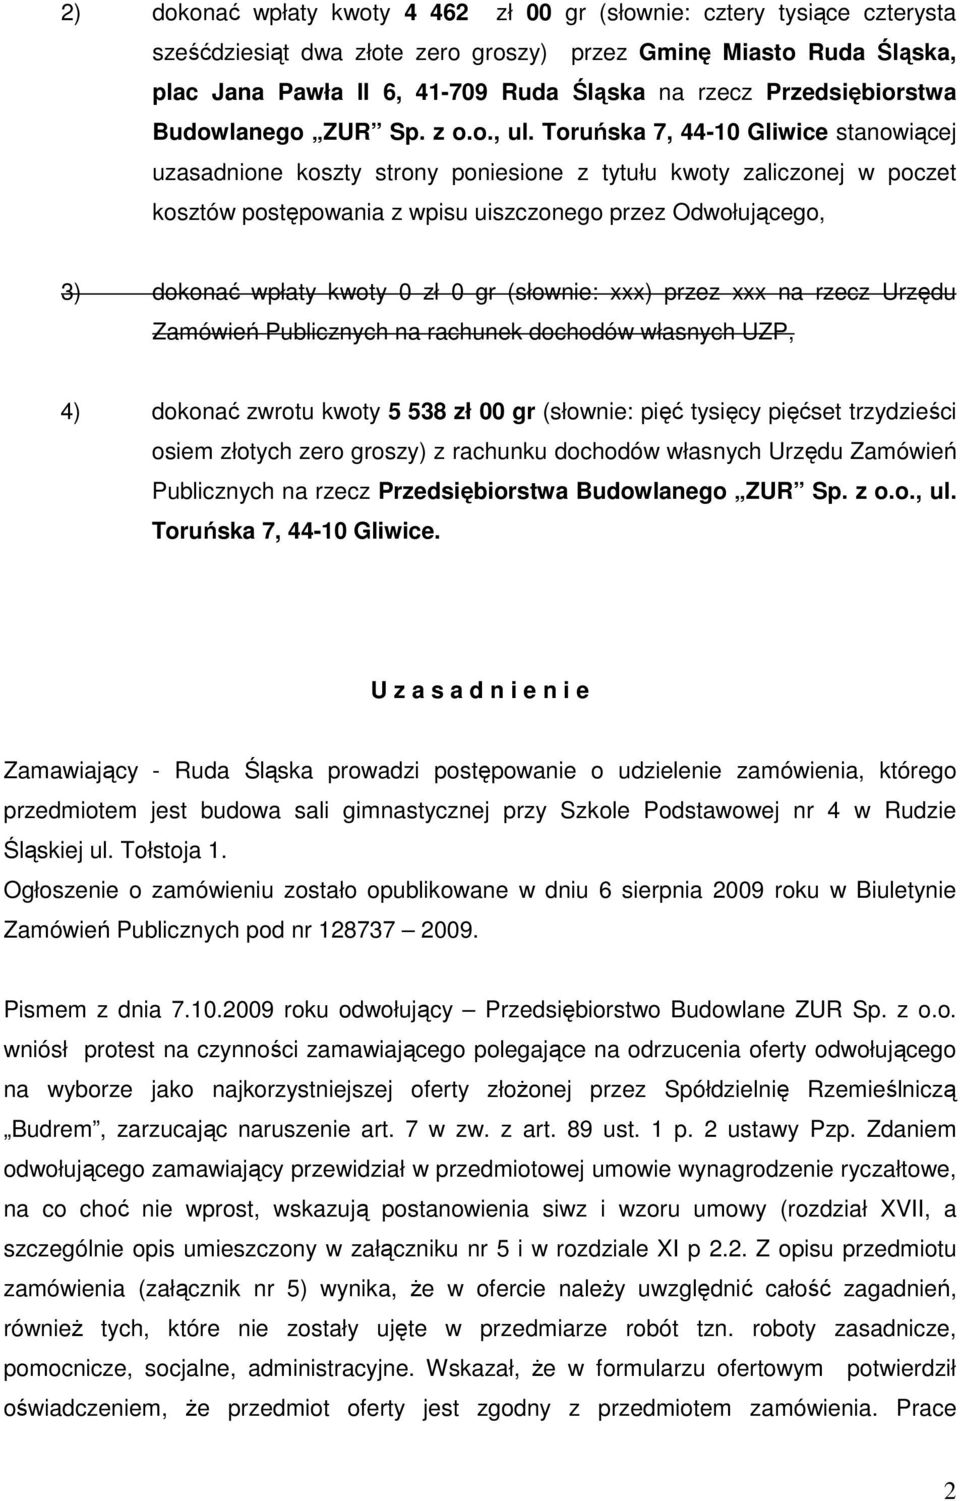 Toruńska 7, 44-10 Gliwice stanowiącej uzasadnione koszty strony poniesione z tytułu kwoty zaliczonej w poczet kosztów postępowania z wpisu uiszczonego przez Odwołującego, 3) dokonać wpłaty kwoty 0 zł